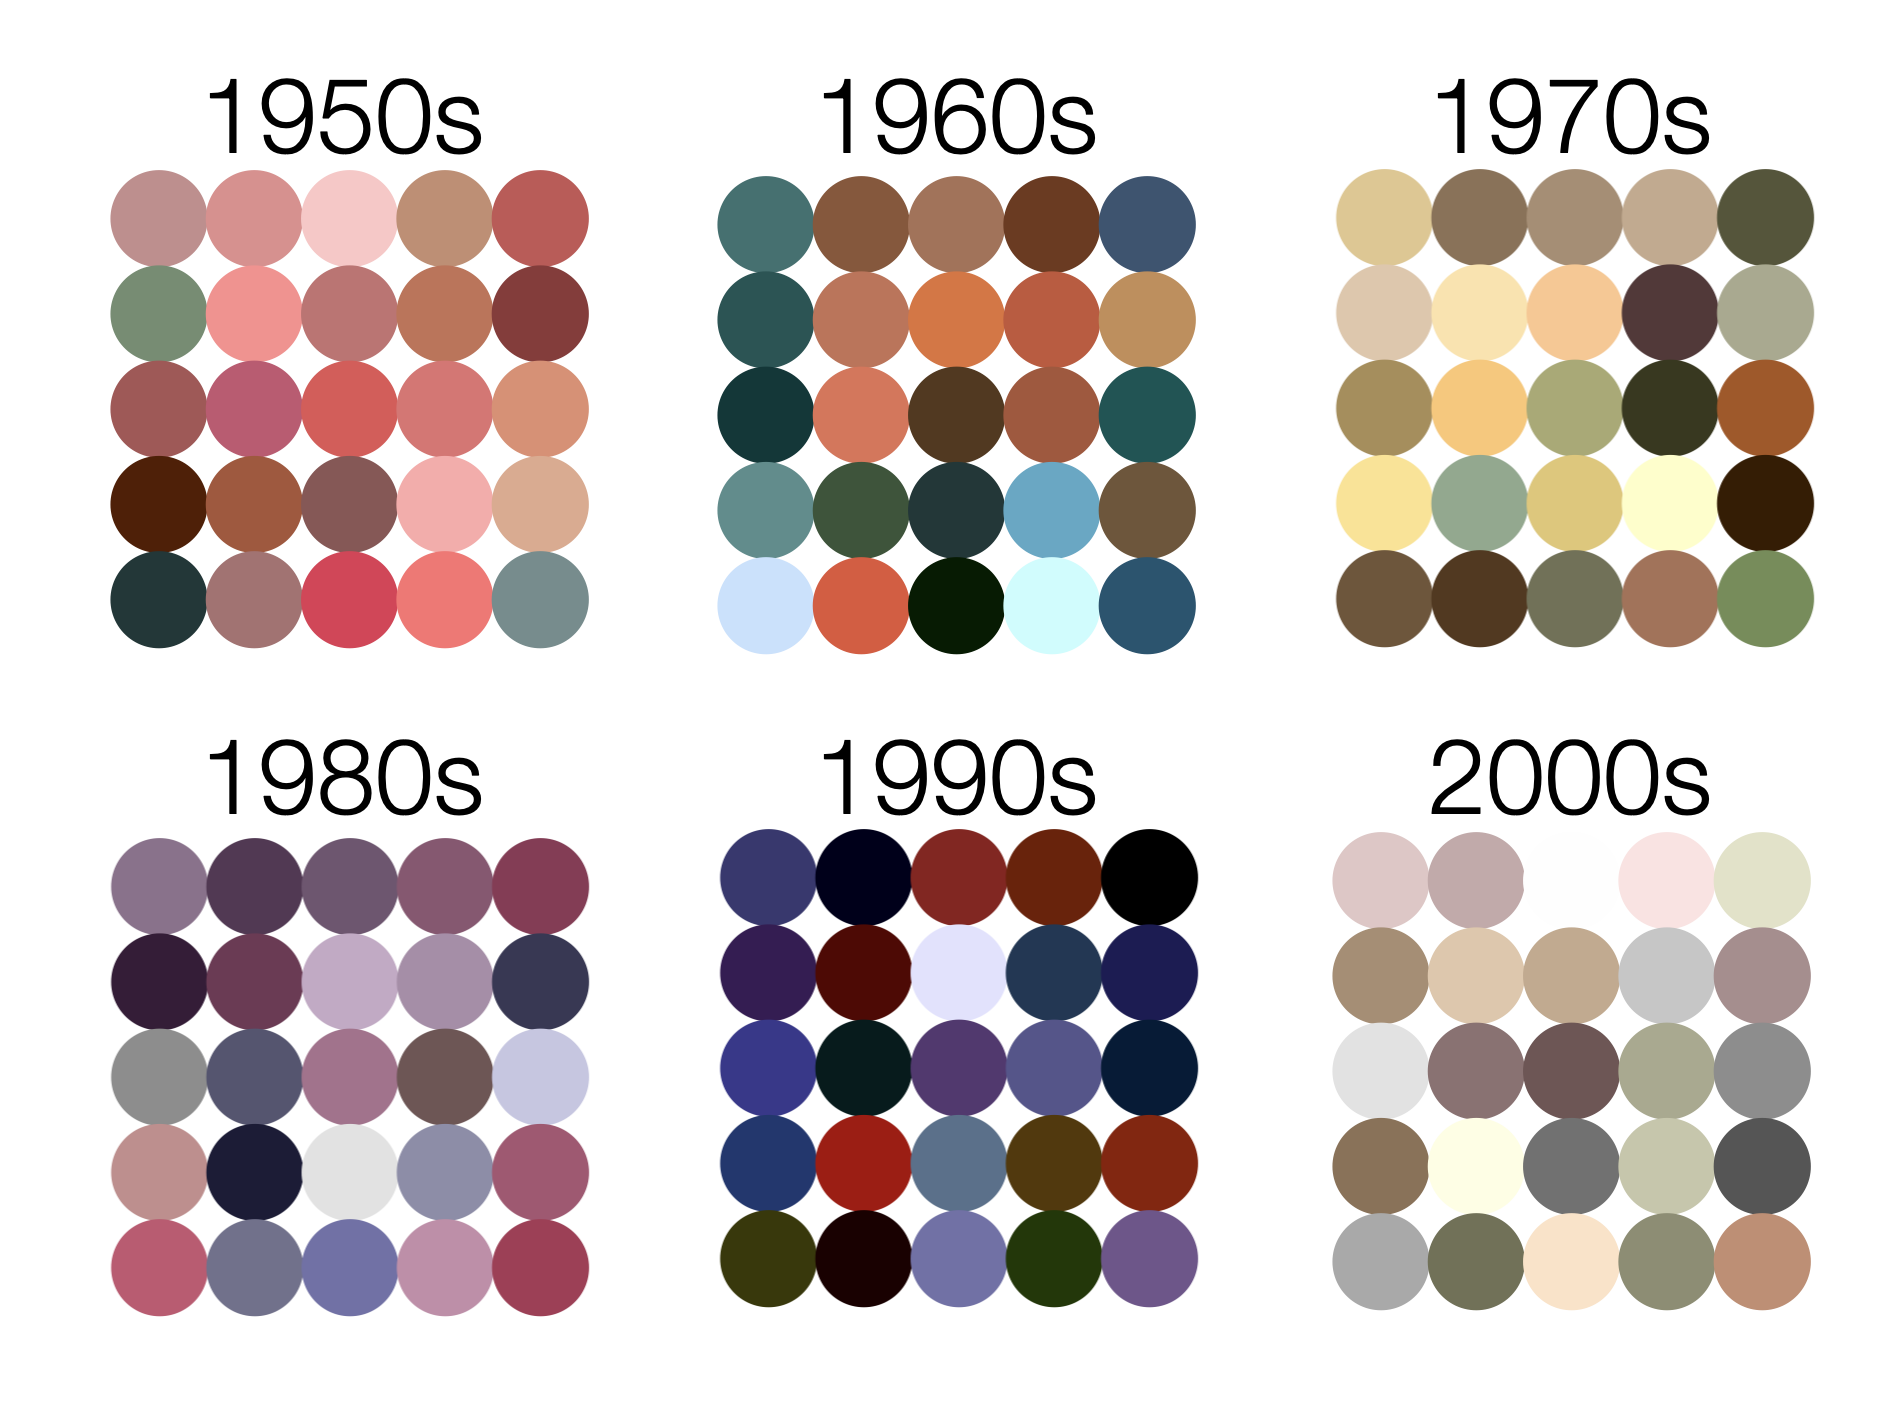 popular colors over decades